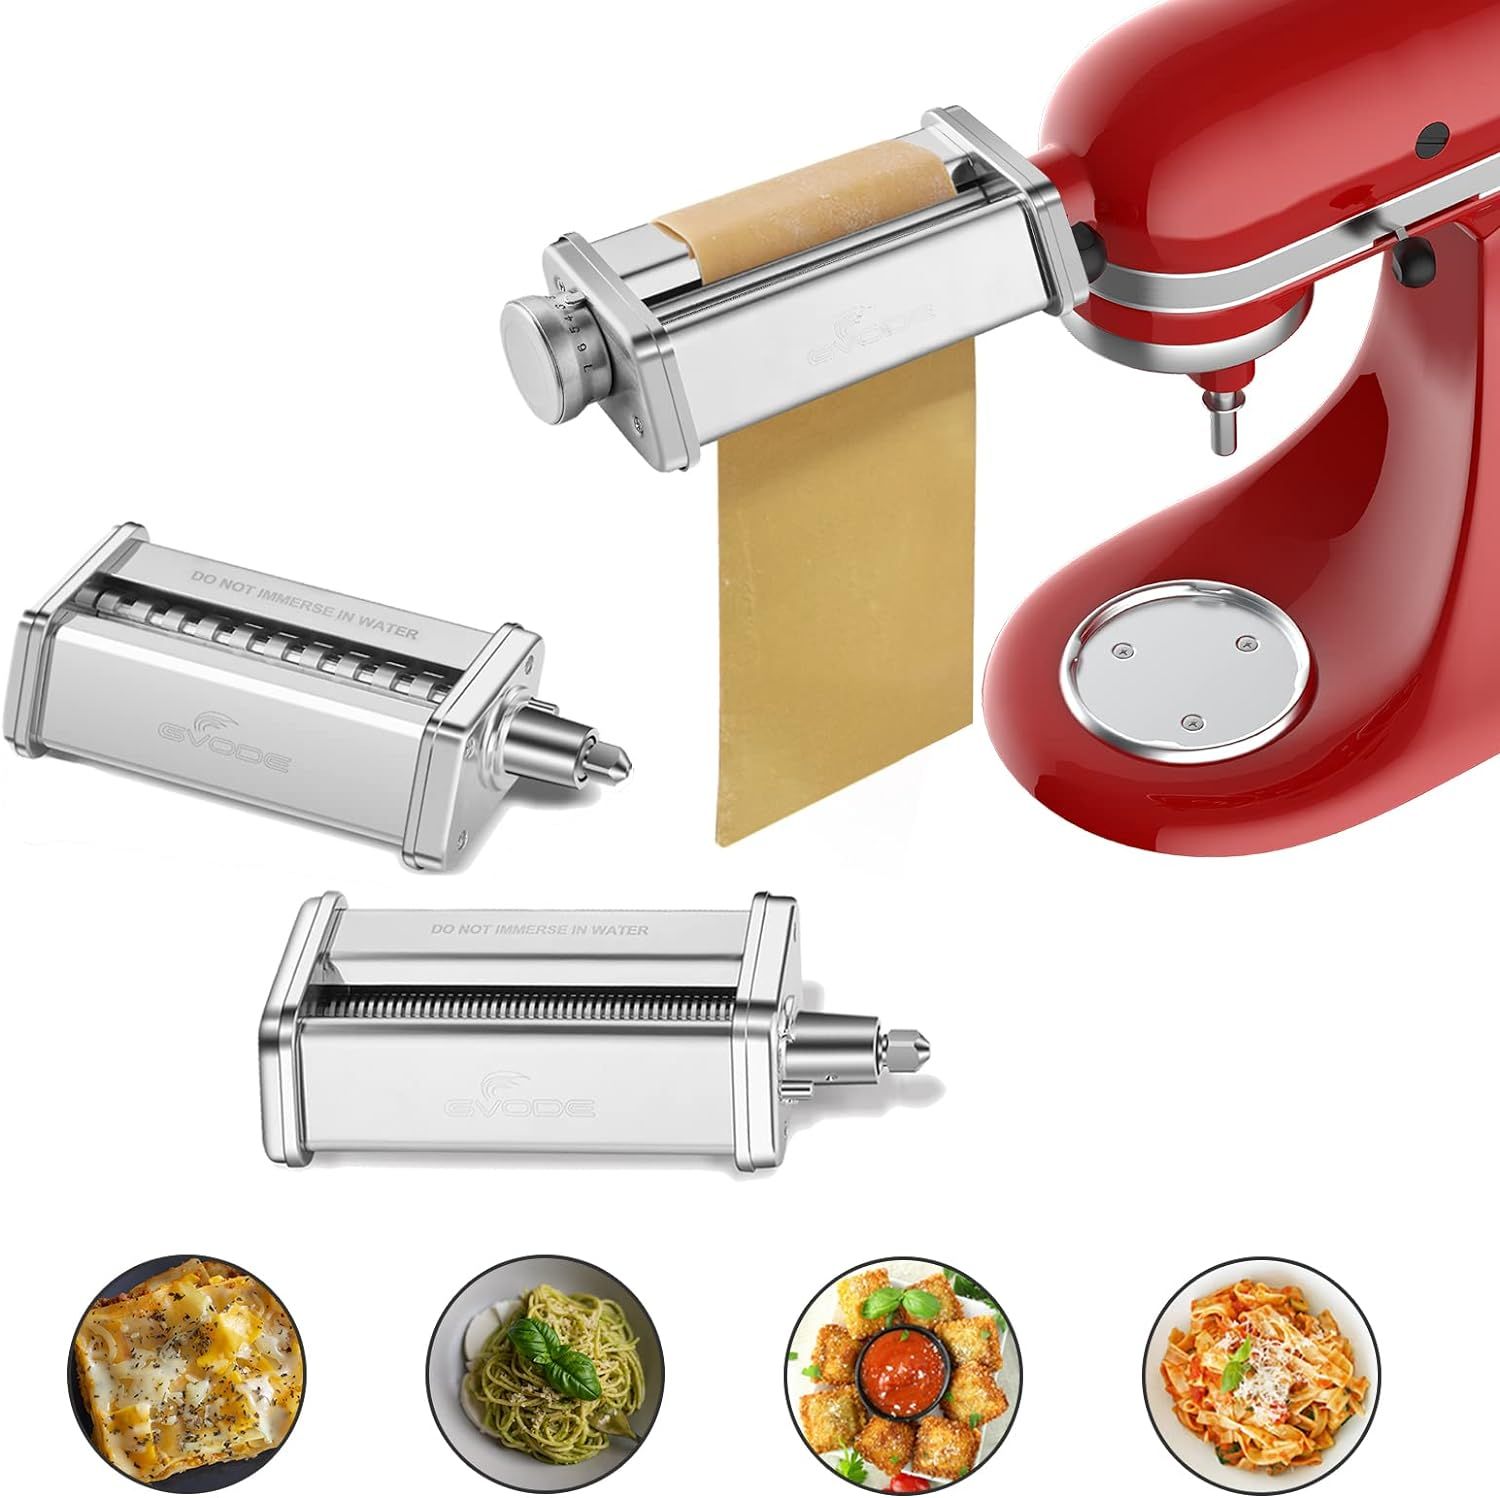 Amazon.com: Pasta Attachment for KitchenAid Stand Mixer Included Pasta Sheet Roller, Spaghetti Cu... | Amazon (US)